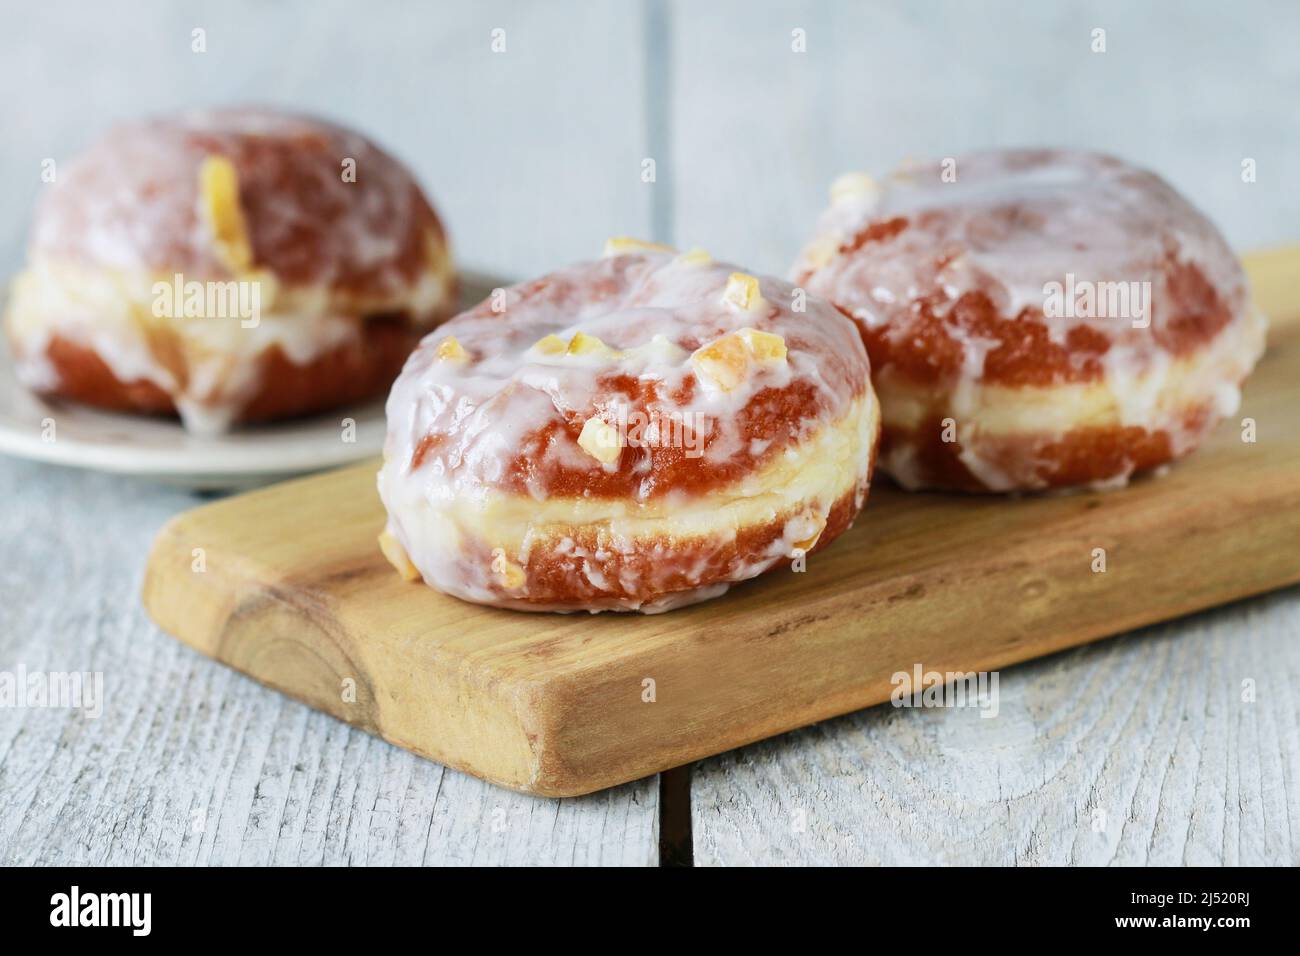 Celebración del jueves gordo - donuts polacos tradicionales llenos de mermelada. Postre de fiesta Foto de stock